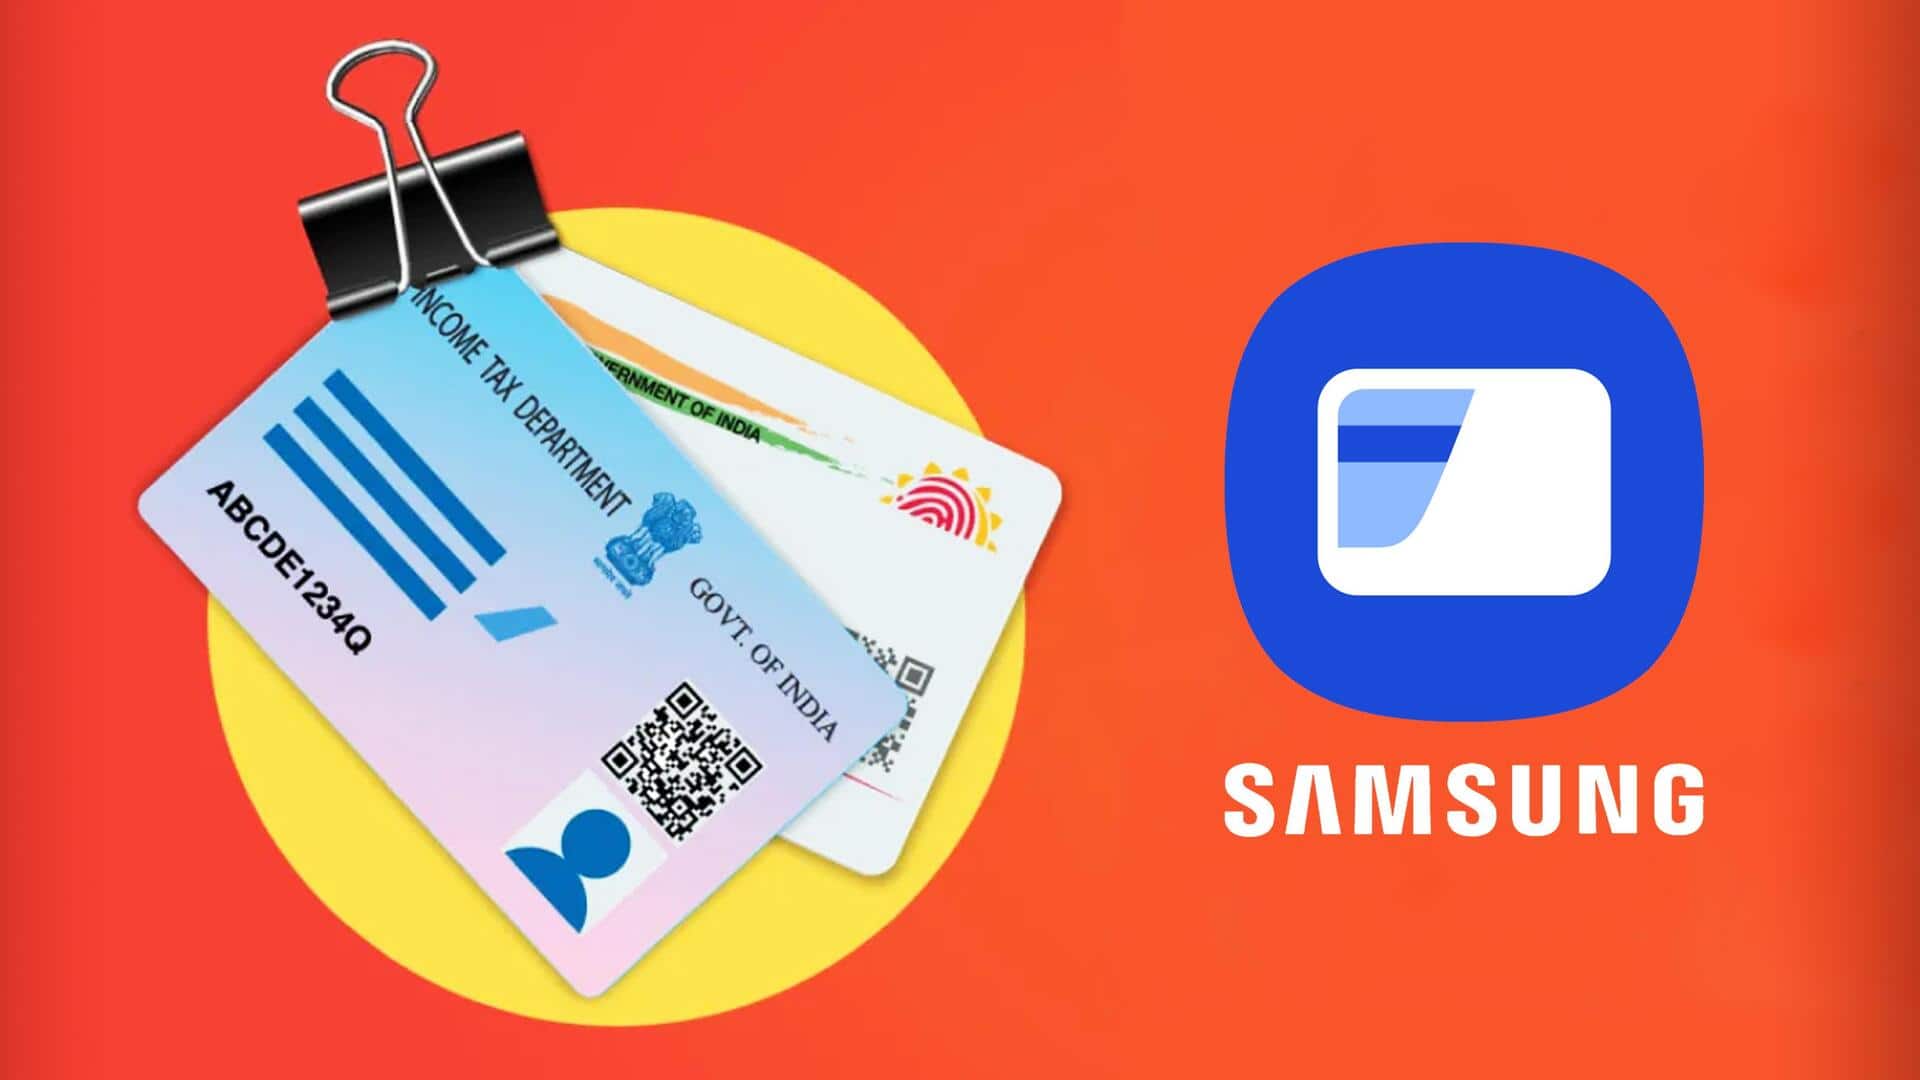 सैमसंग गैलेक्सी फोन से अब एक्सेस कर पाएंगे आधार कार्ड, ड्राइविंग लाइसेंस सहित अन्य डॉक्यूमेंट्स 